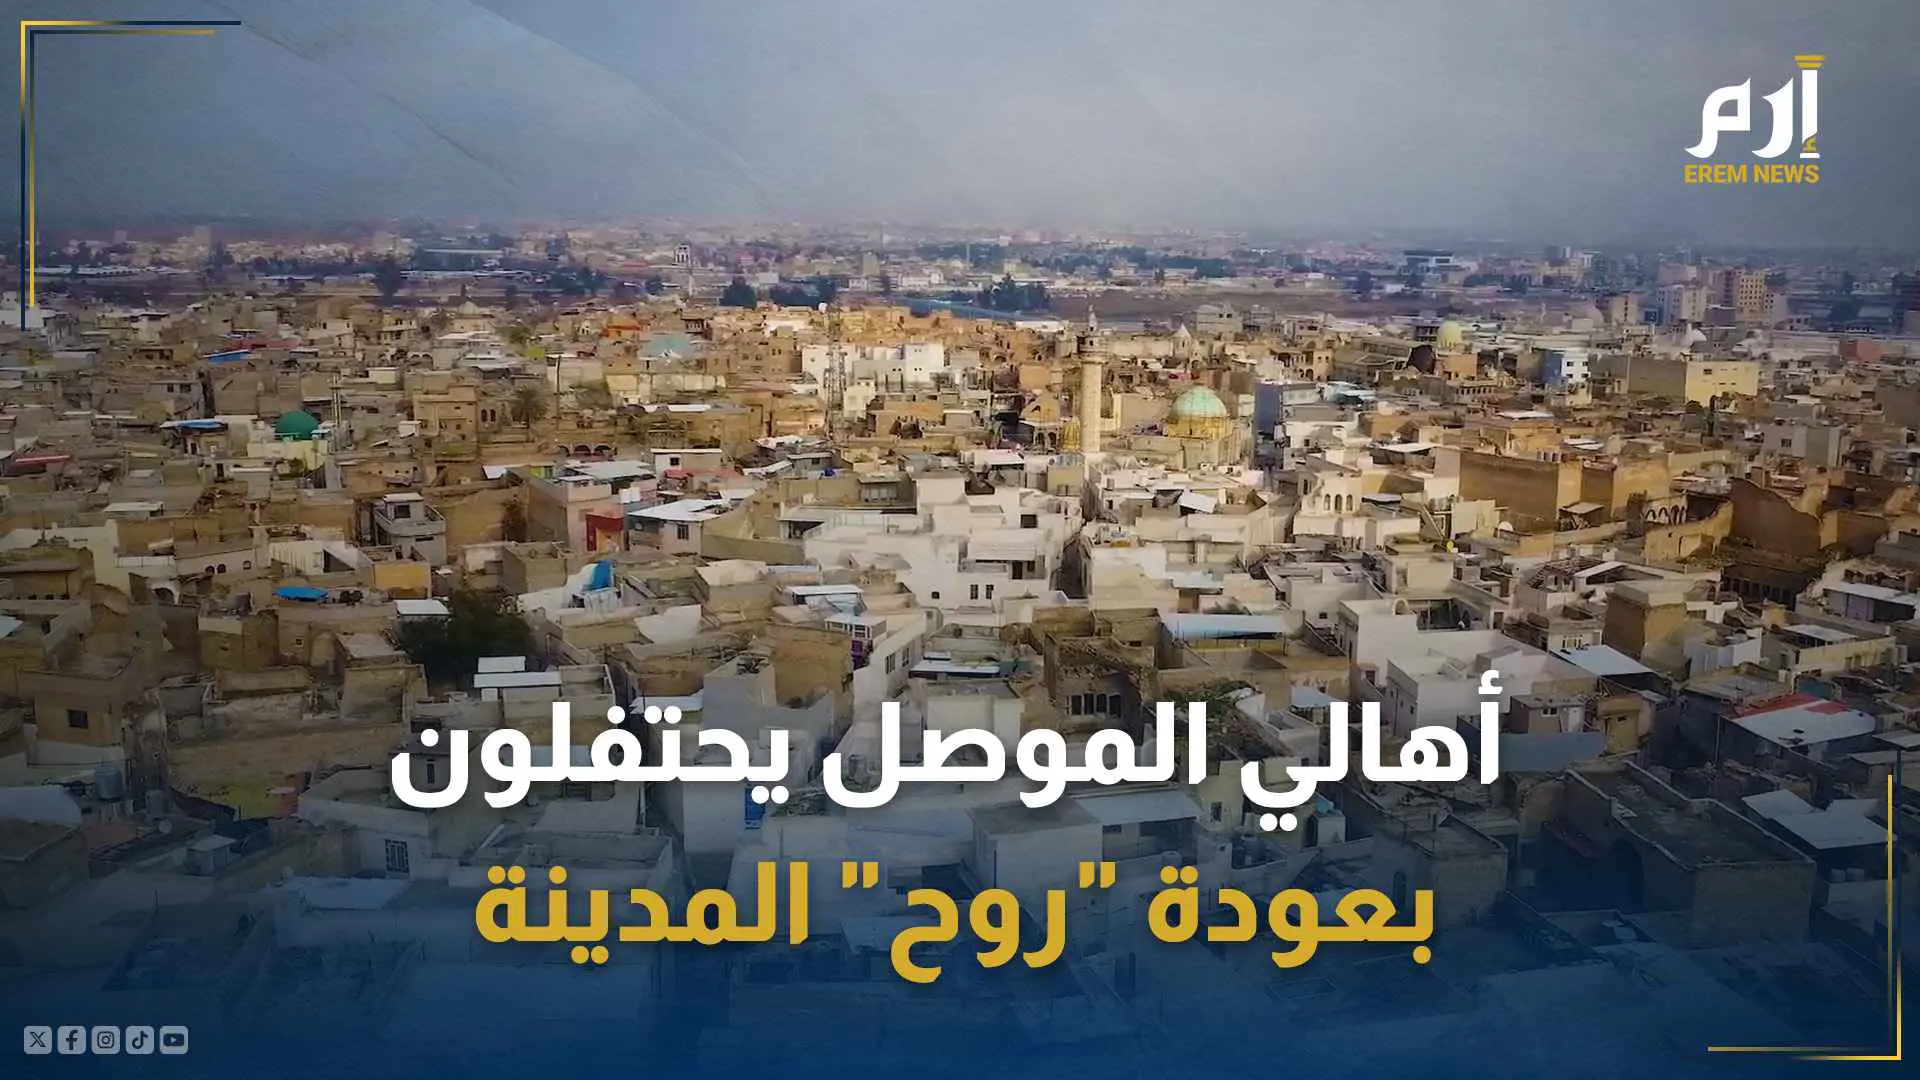 أهالي الموصل يحتفلون بعودة "روح" المدينة التي دمّرها داعش